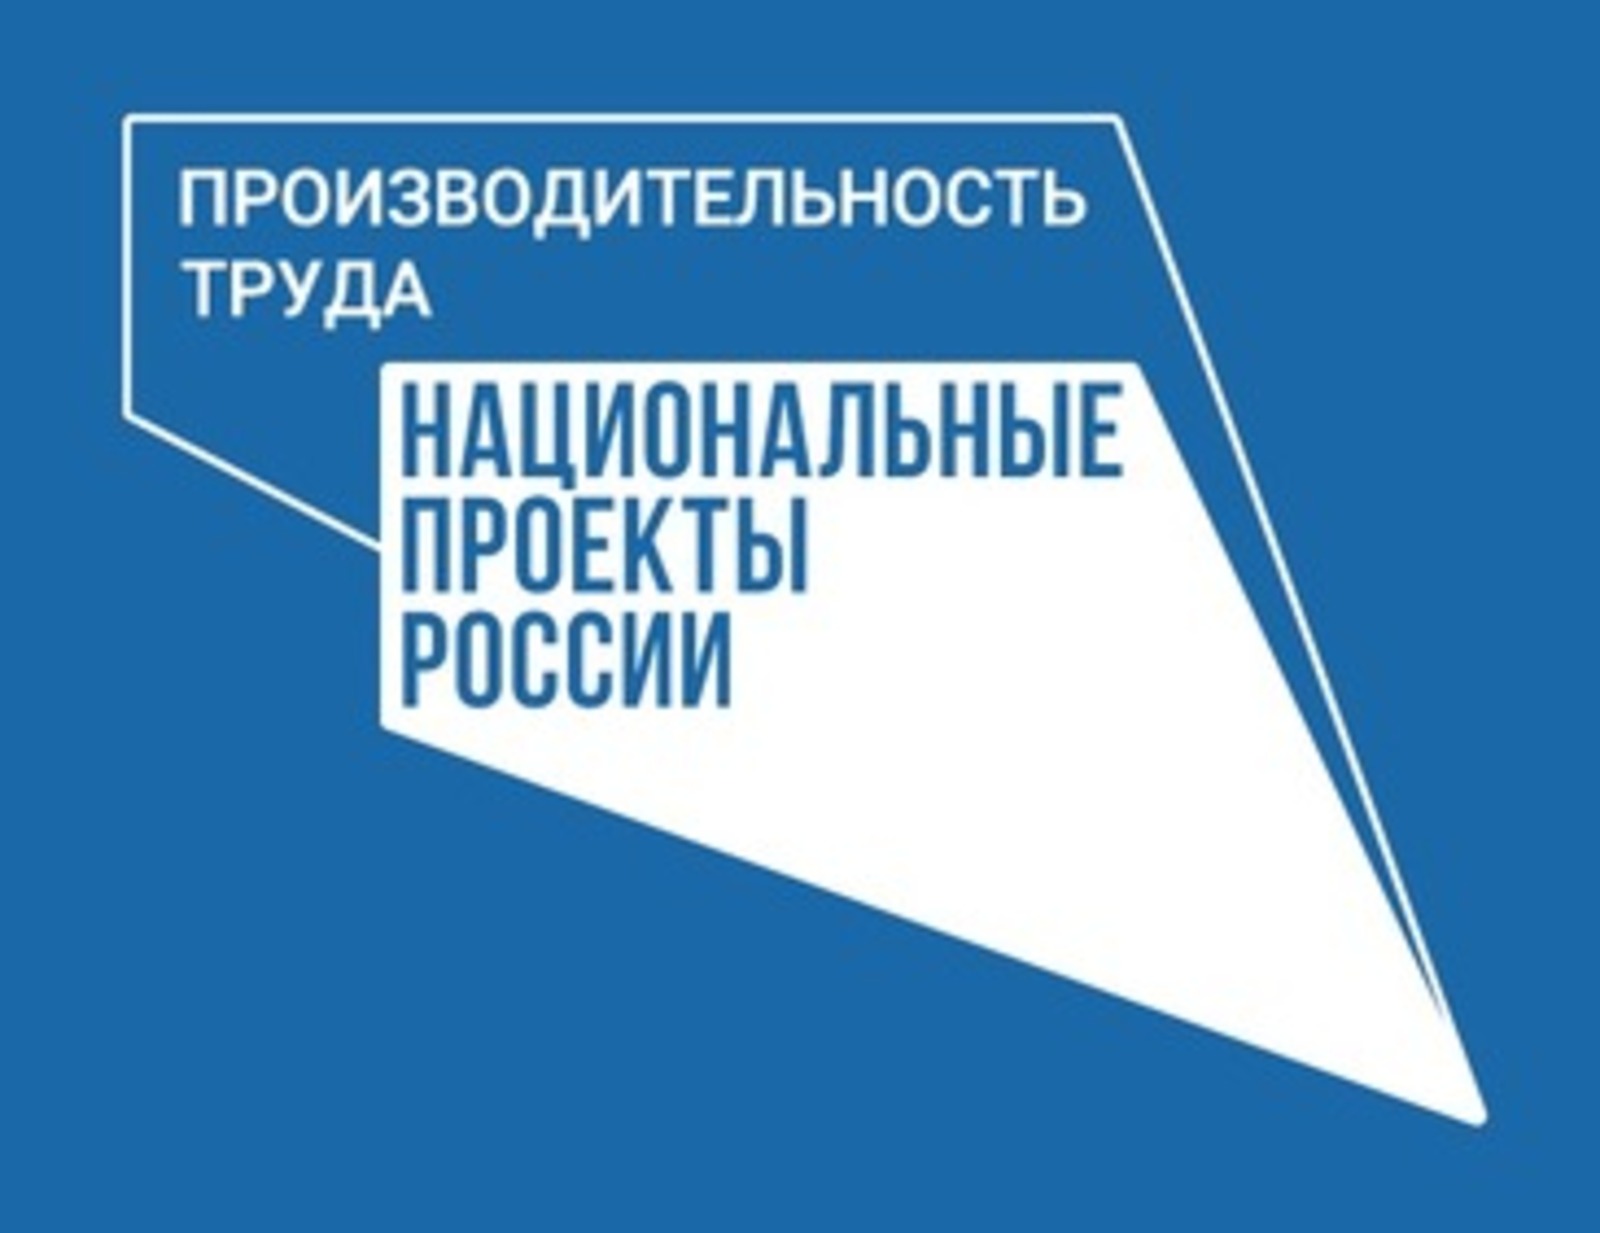 В Башкортостане объем выручки предприятий-участников нацпроекта «Производительность труда» превысил 145 млрд рублей